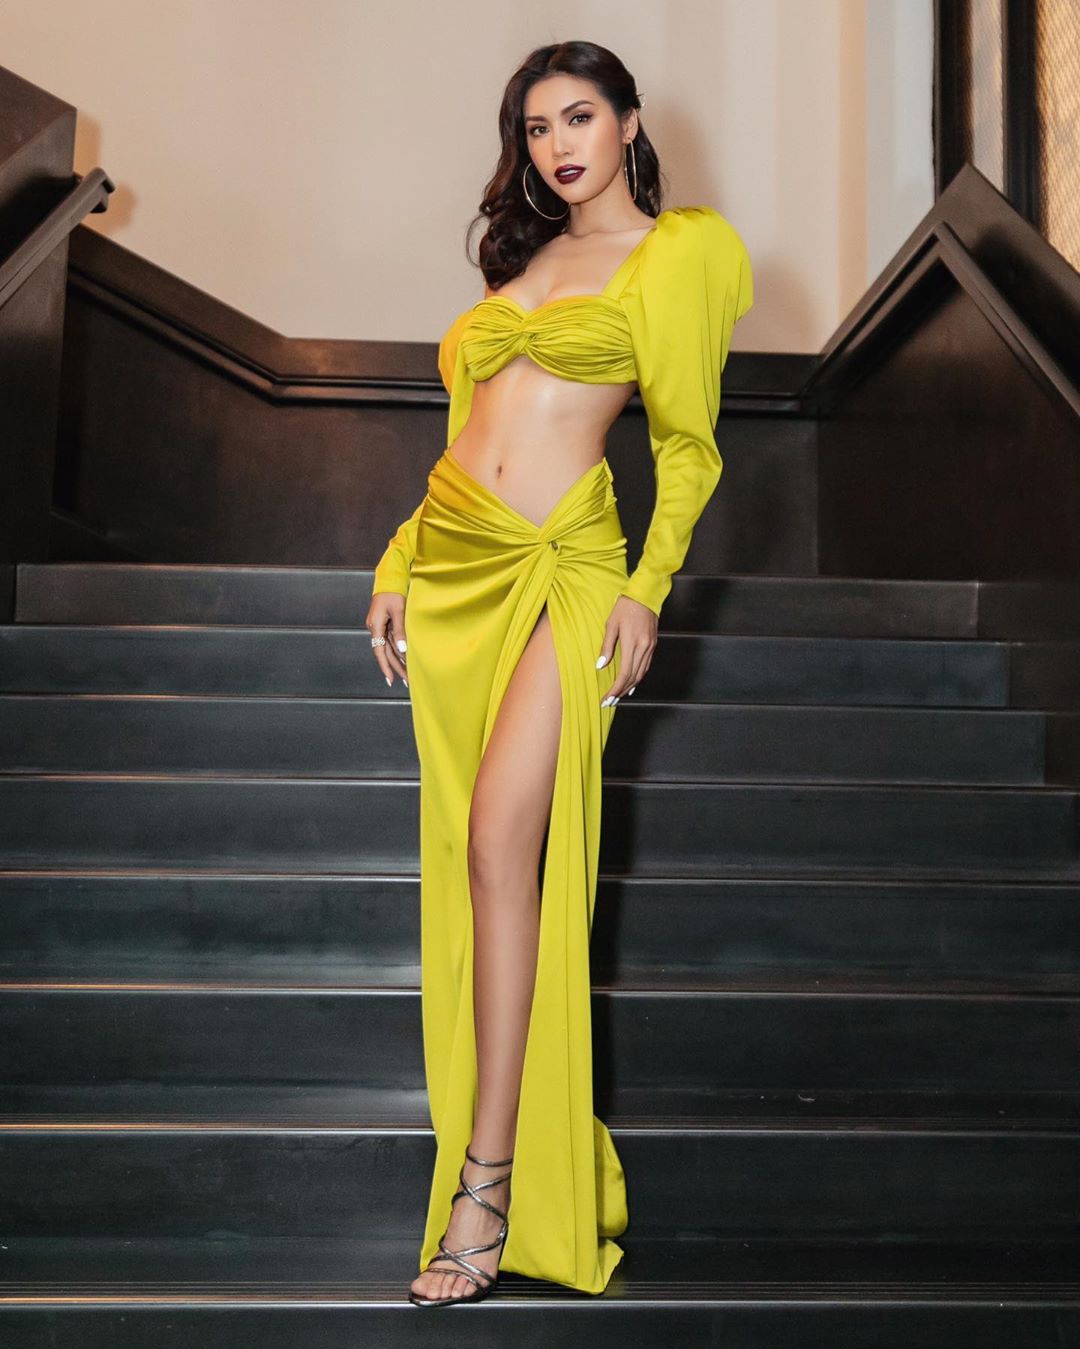 Hoa hậu Siêu quốc gia châu Á 2018 Minh Tú: “Sống không cà khịa là ...